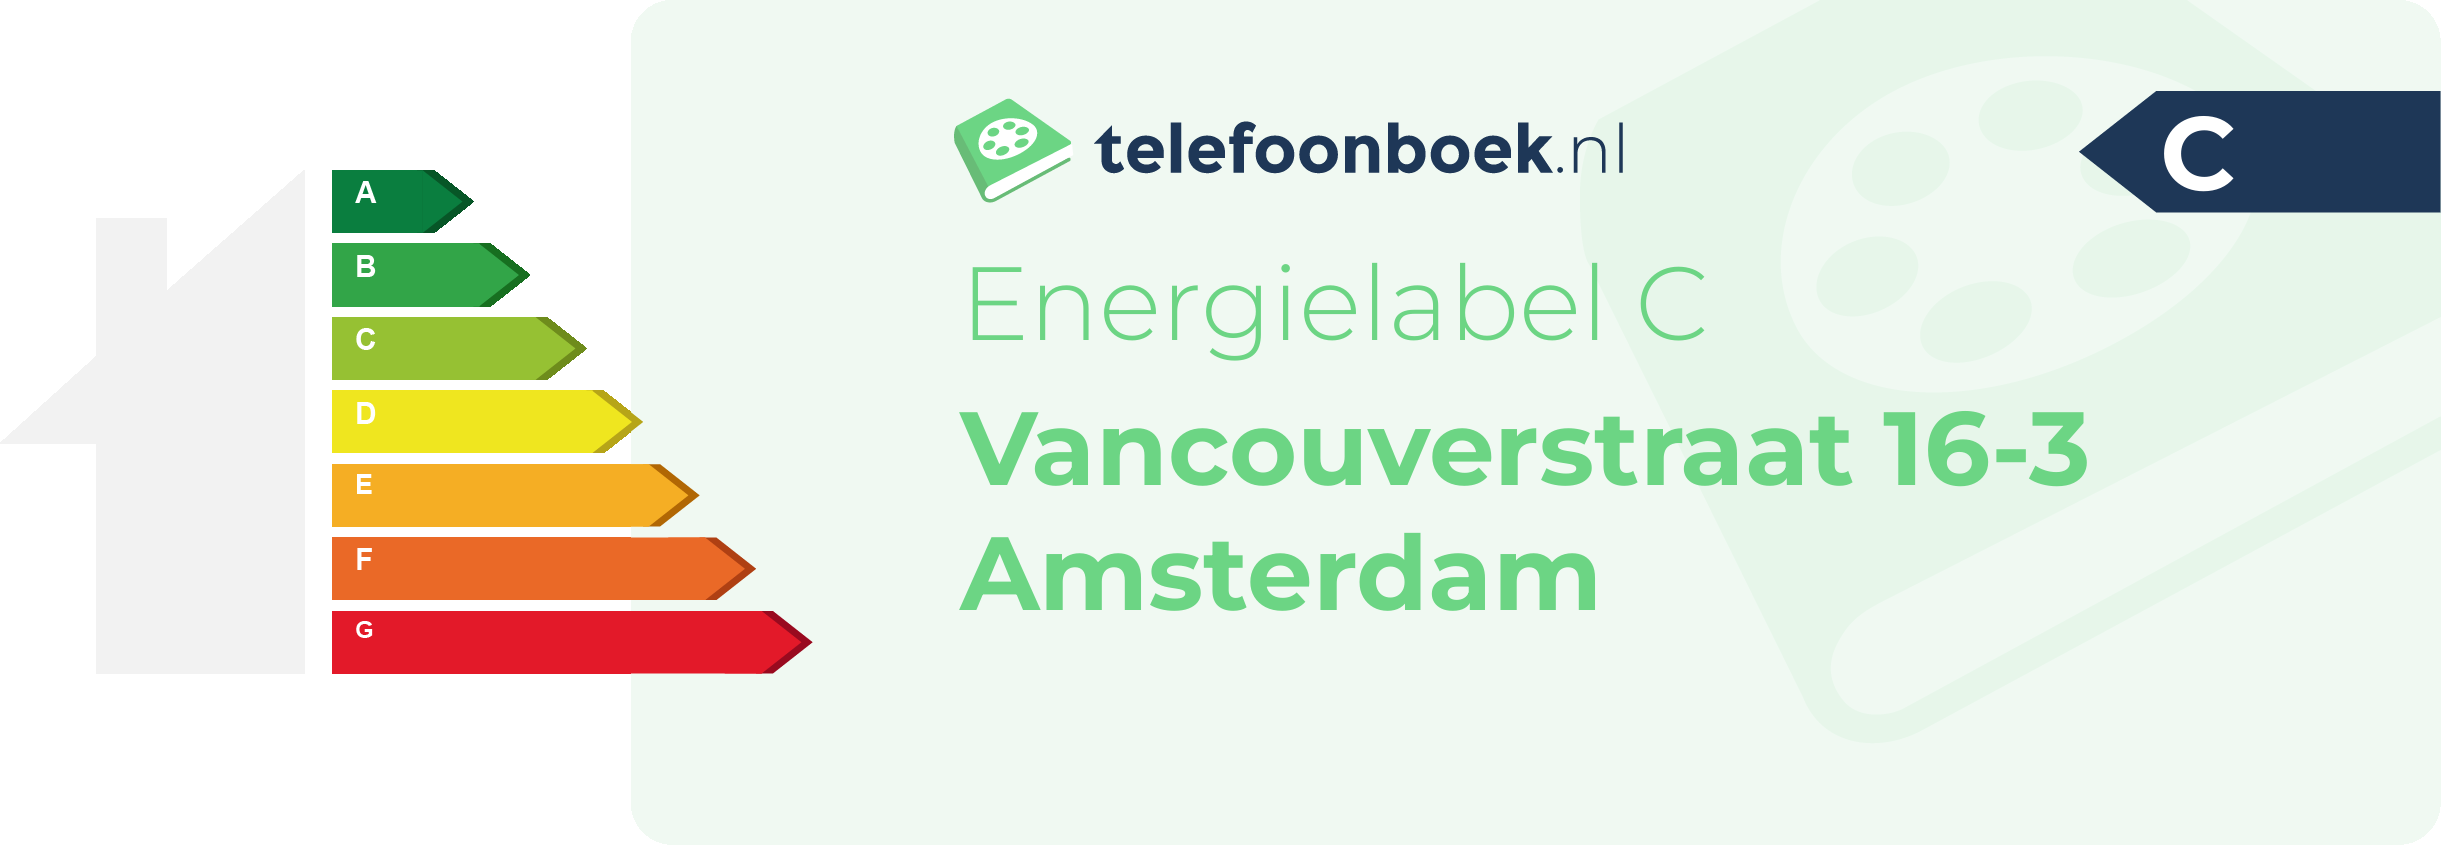 Energielabel Vancouverstraat 16-3 Amsterdam